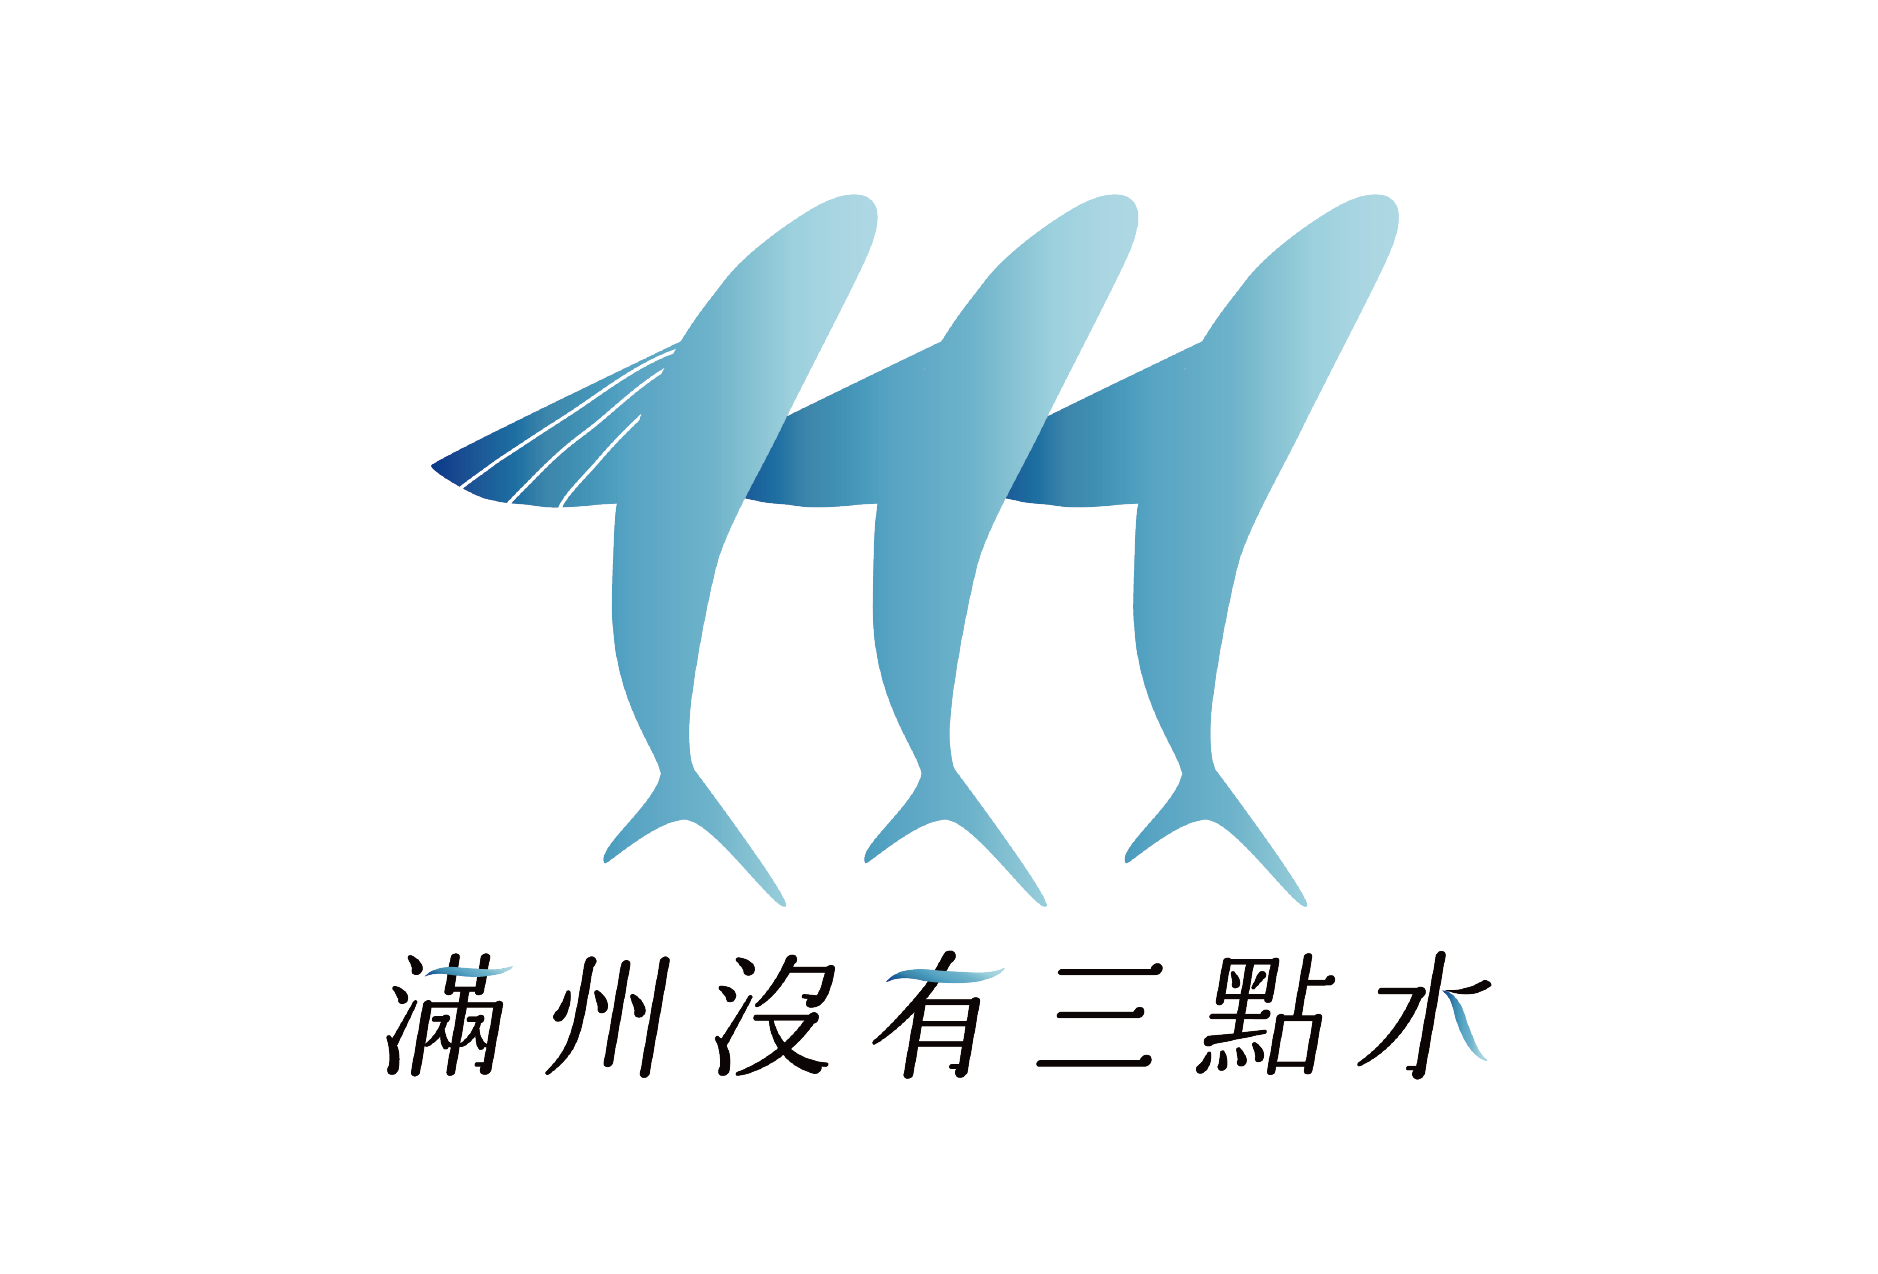 滿州沒有三點水青年共識Logo